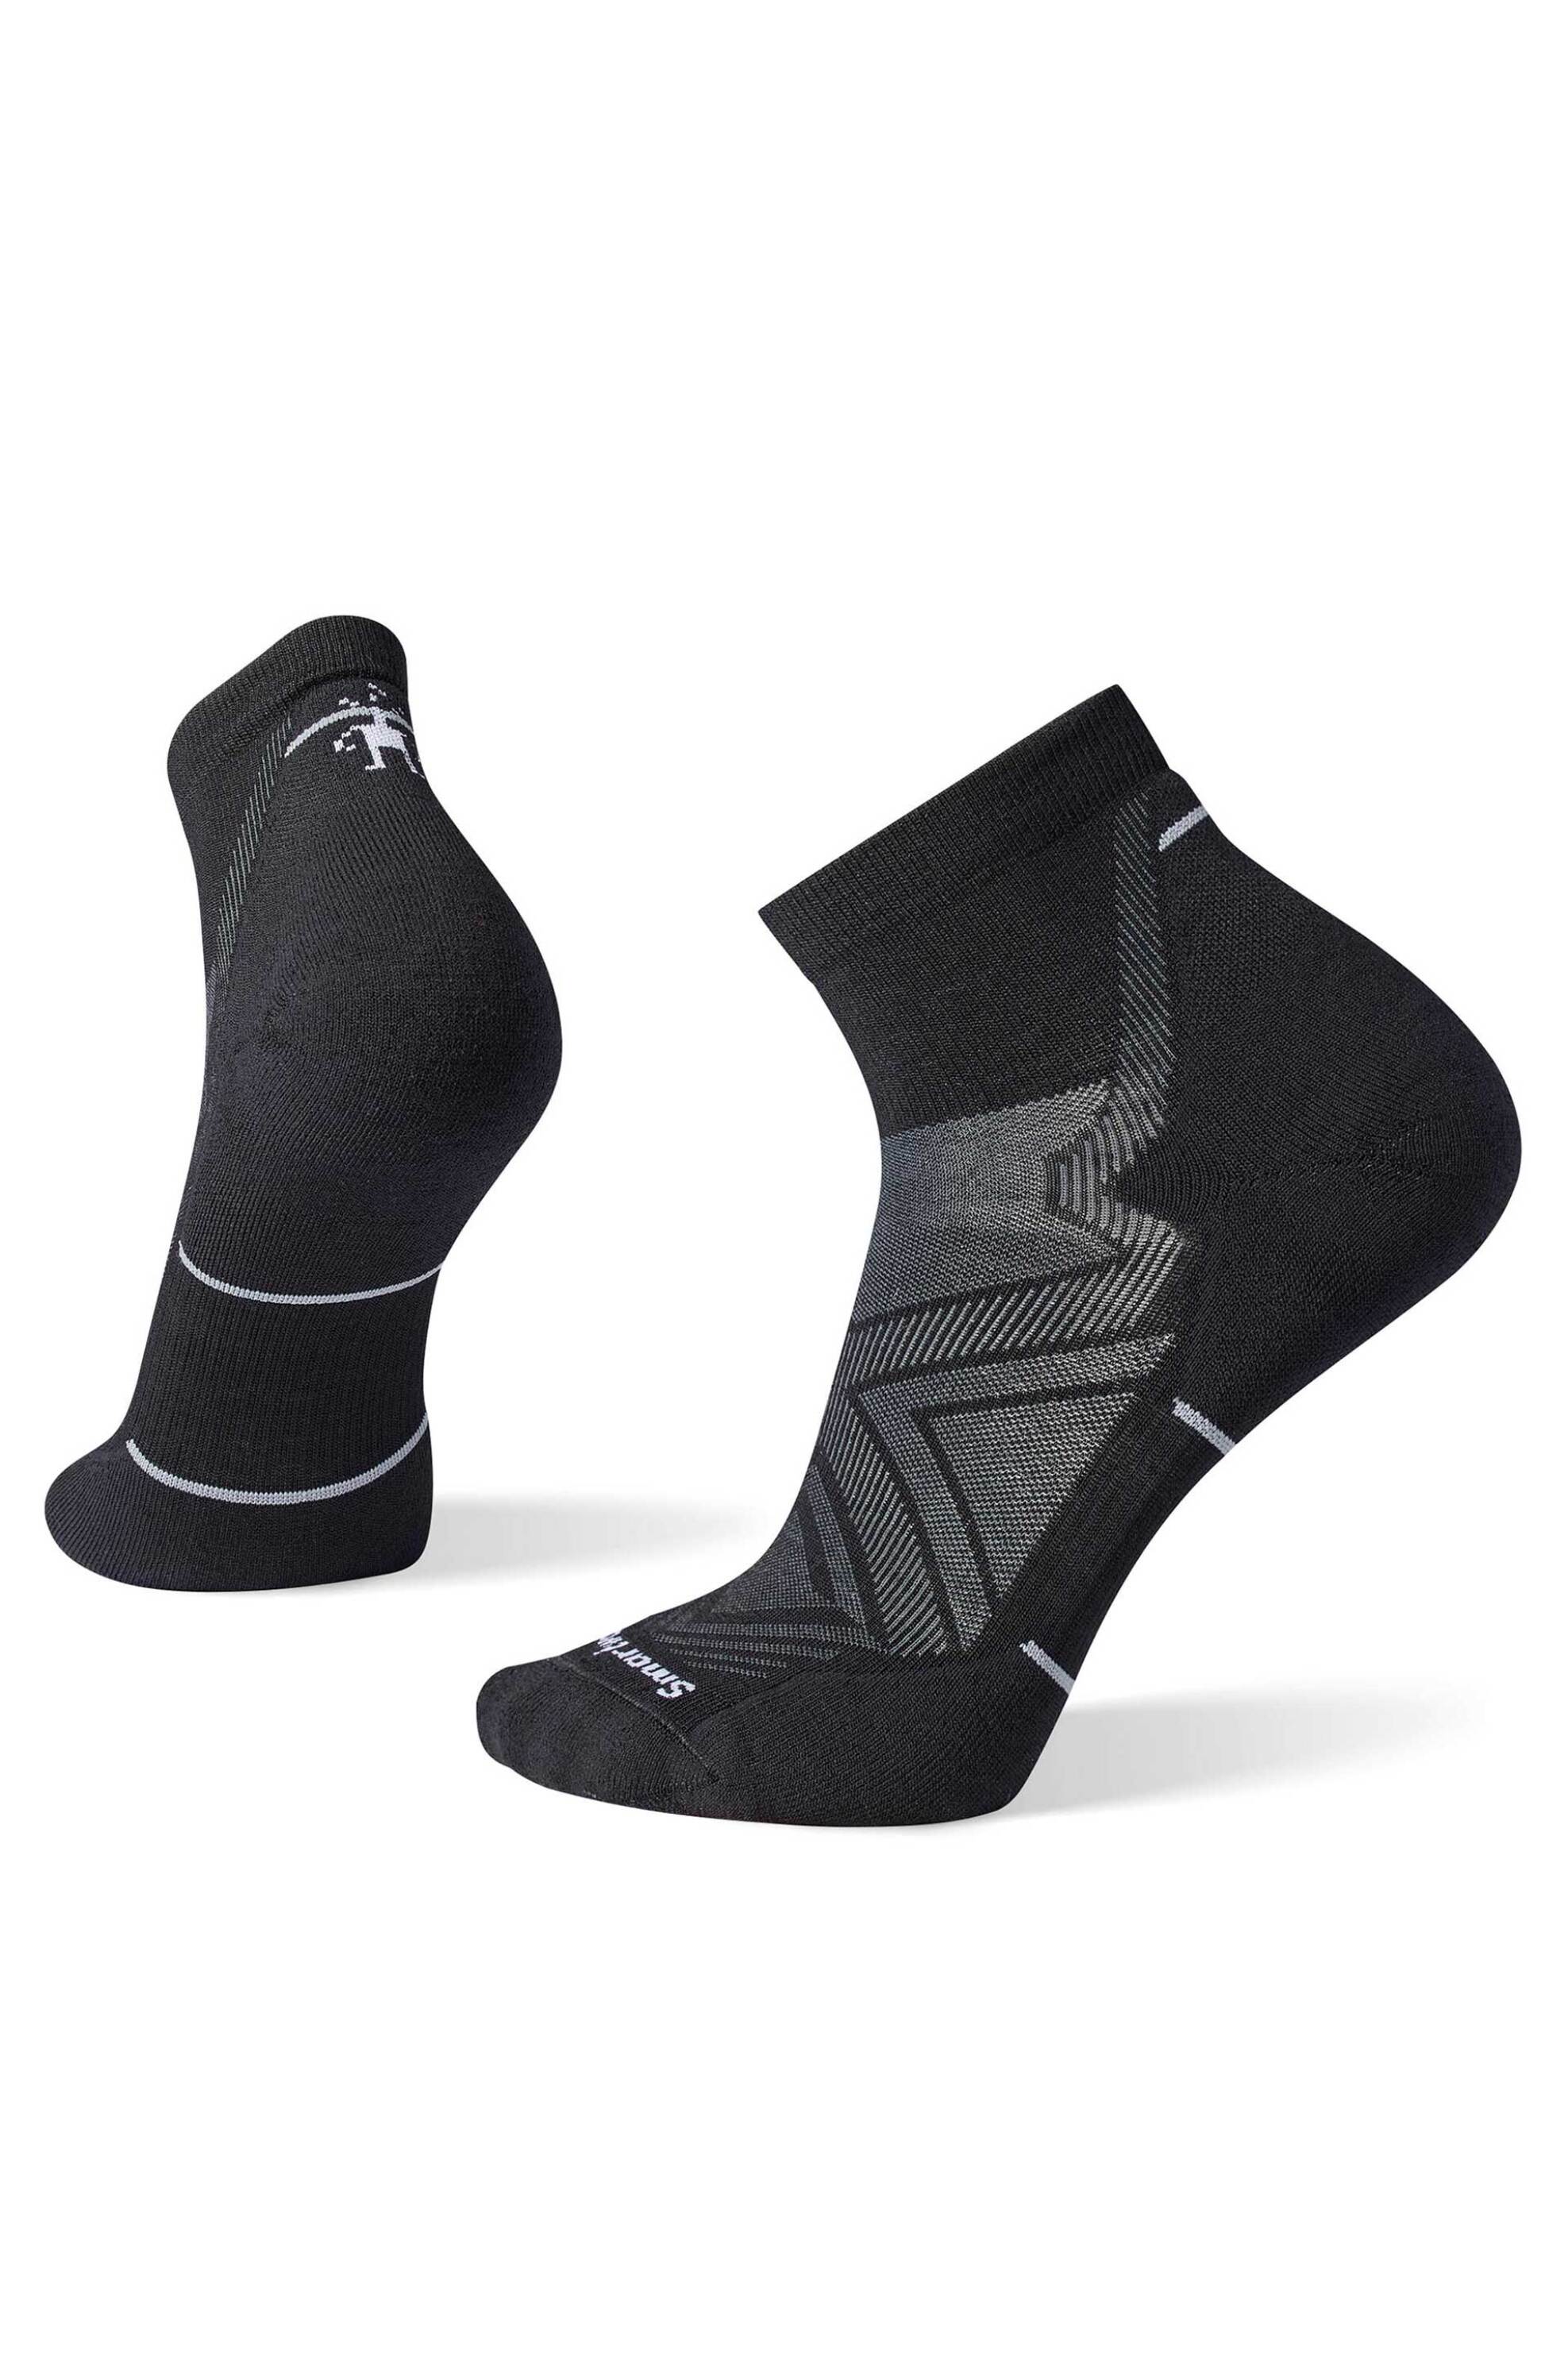 Ανδρική Μόδα > Ανδρικά Ρούχα > Ανδρικές Κάλτσες > Ανδρικές Κάλτσες Κοντές Smartwool unisex κοντές κάλτσες "Run Targeted Cushion Ankle" - SW0016610011 Μαύρο